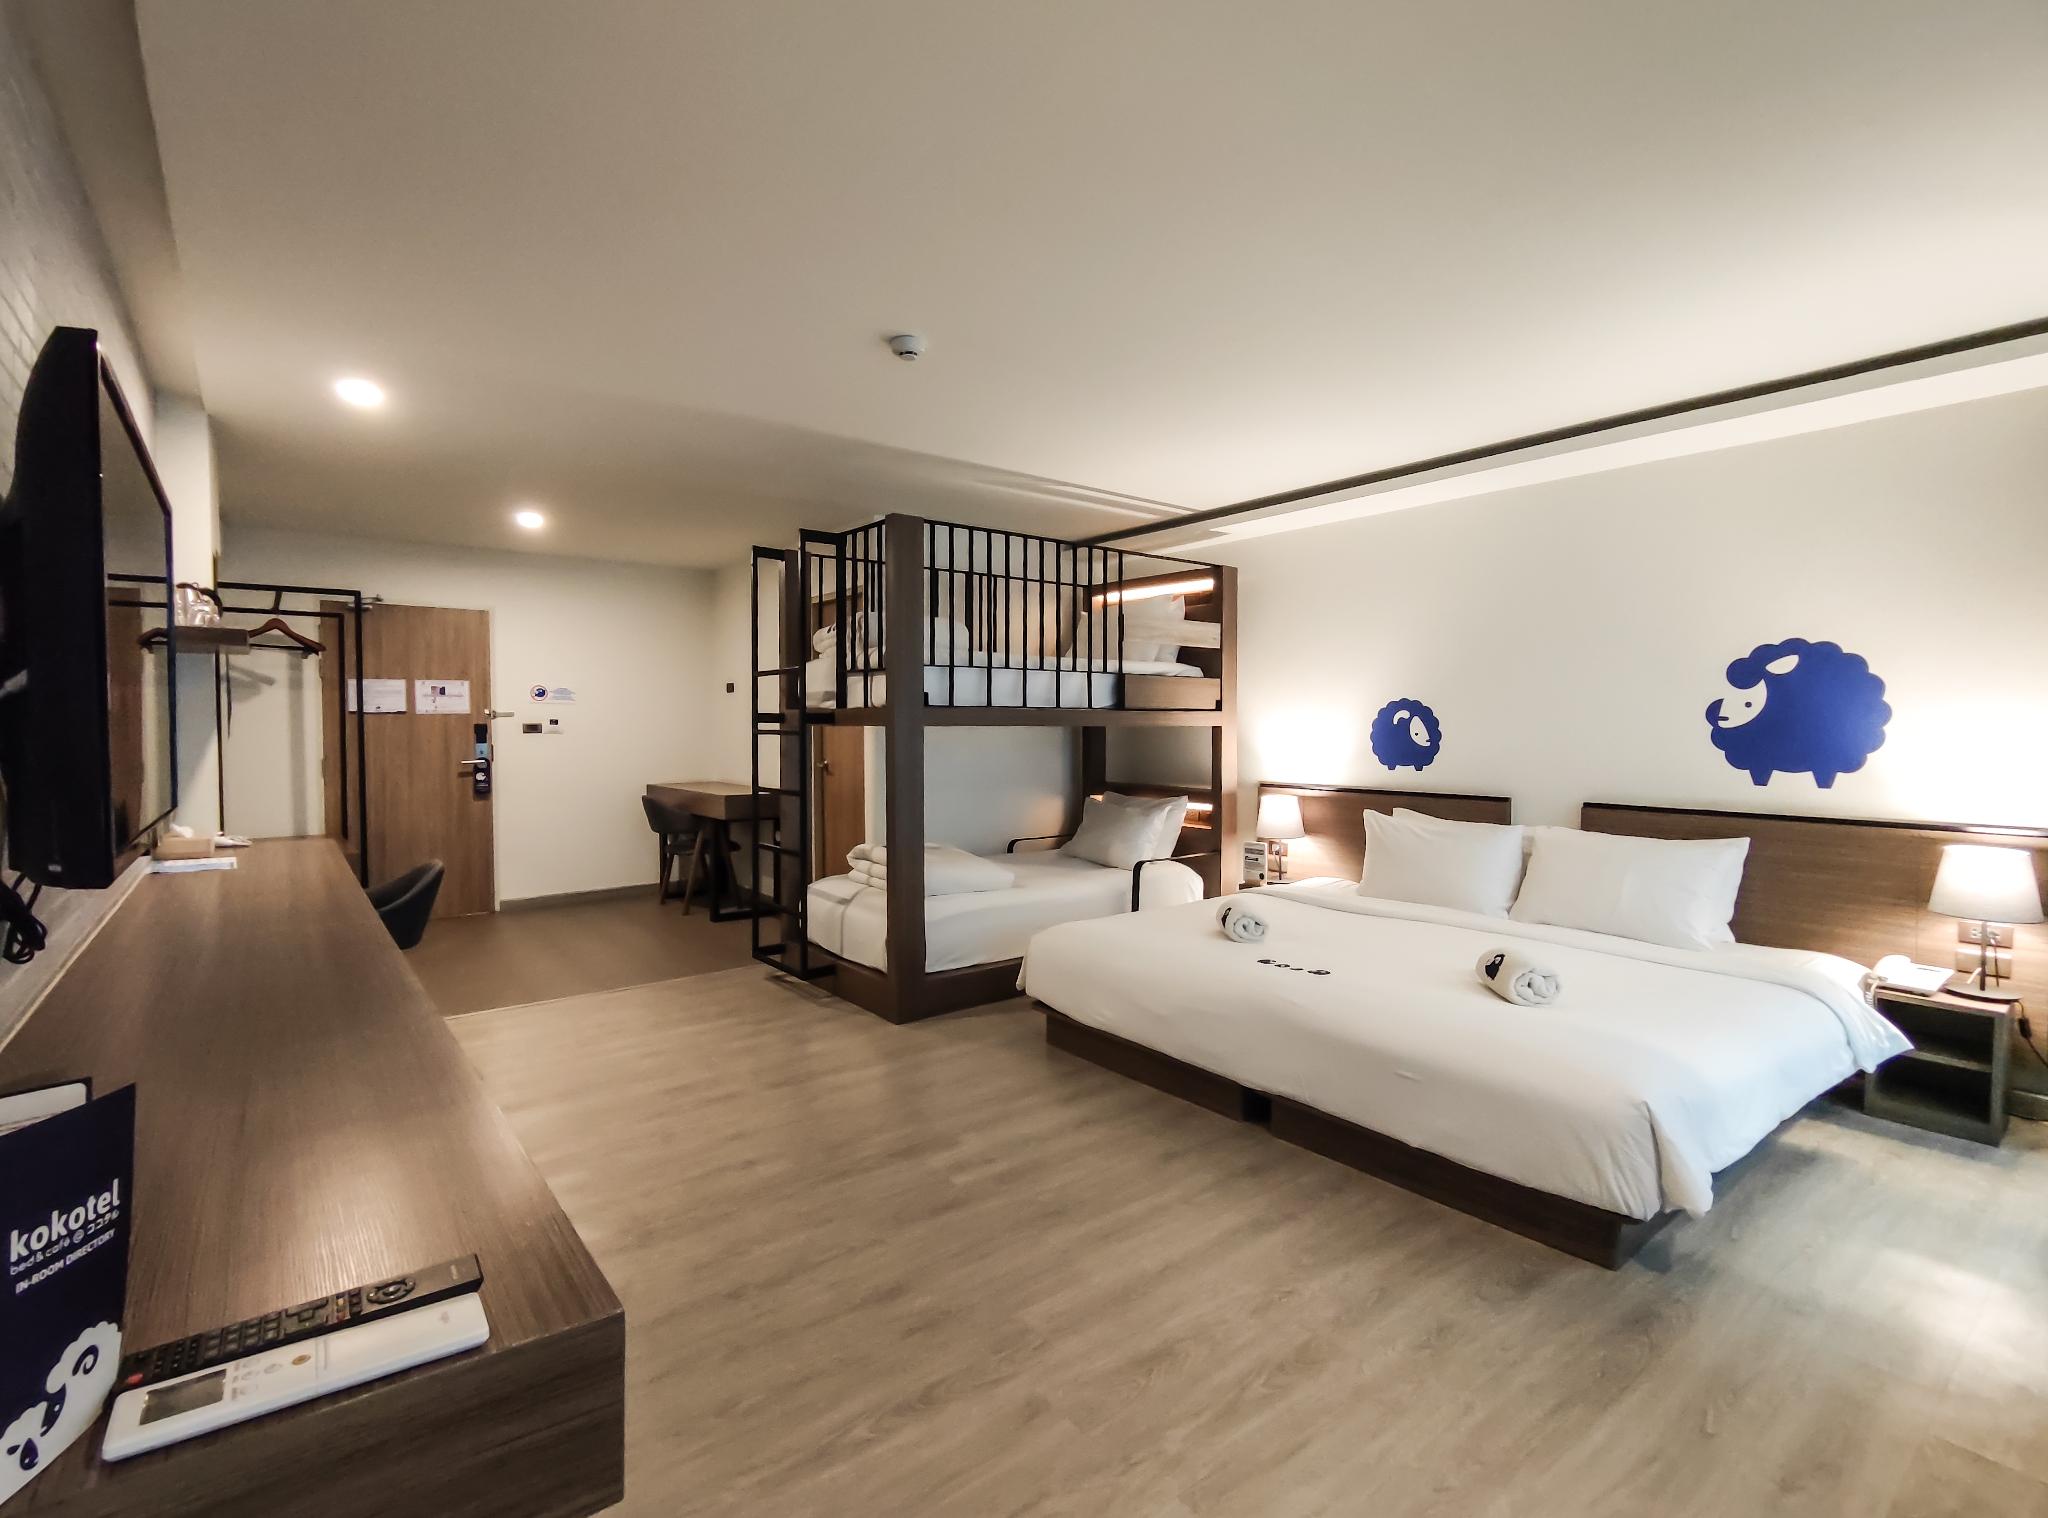 รีวิวโคโคเทล เชียงใหม่ นิมมาน - โปรโมชั่นโรงแรม 3 ดาวในเชียงใหม่ | Trip.com